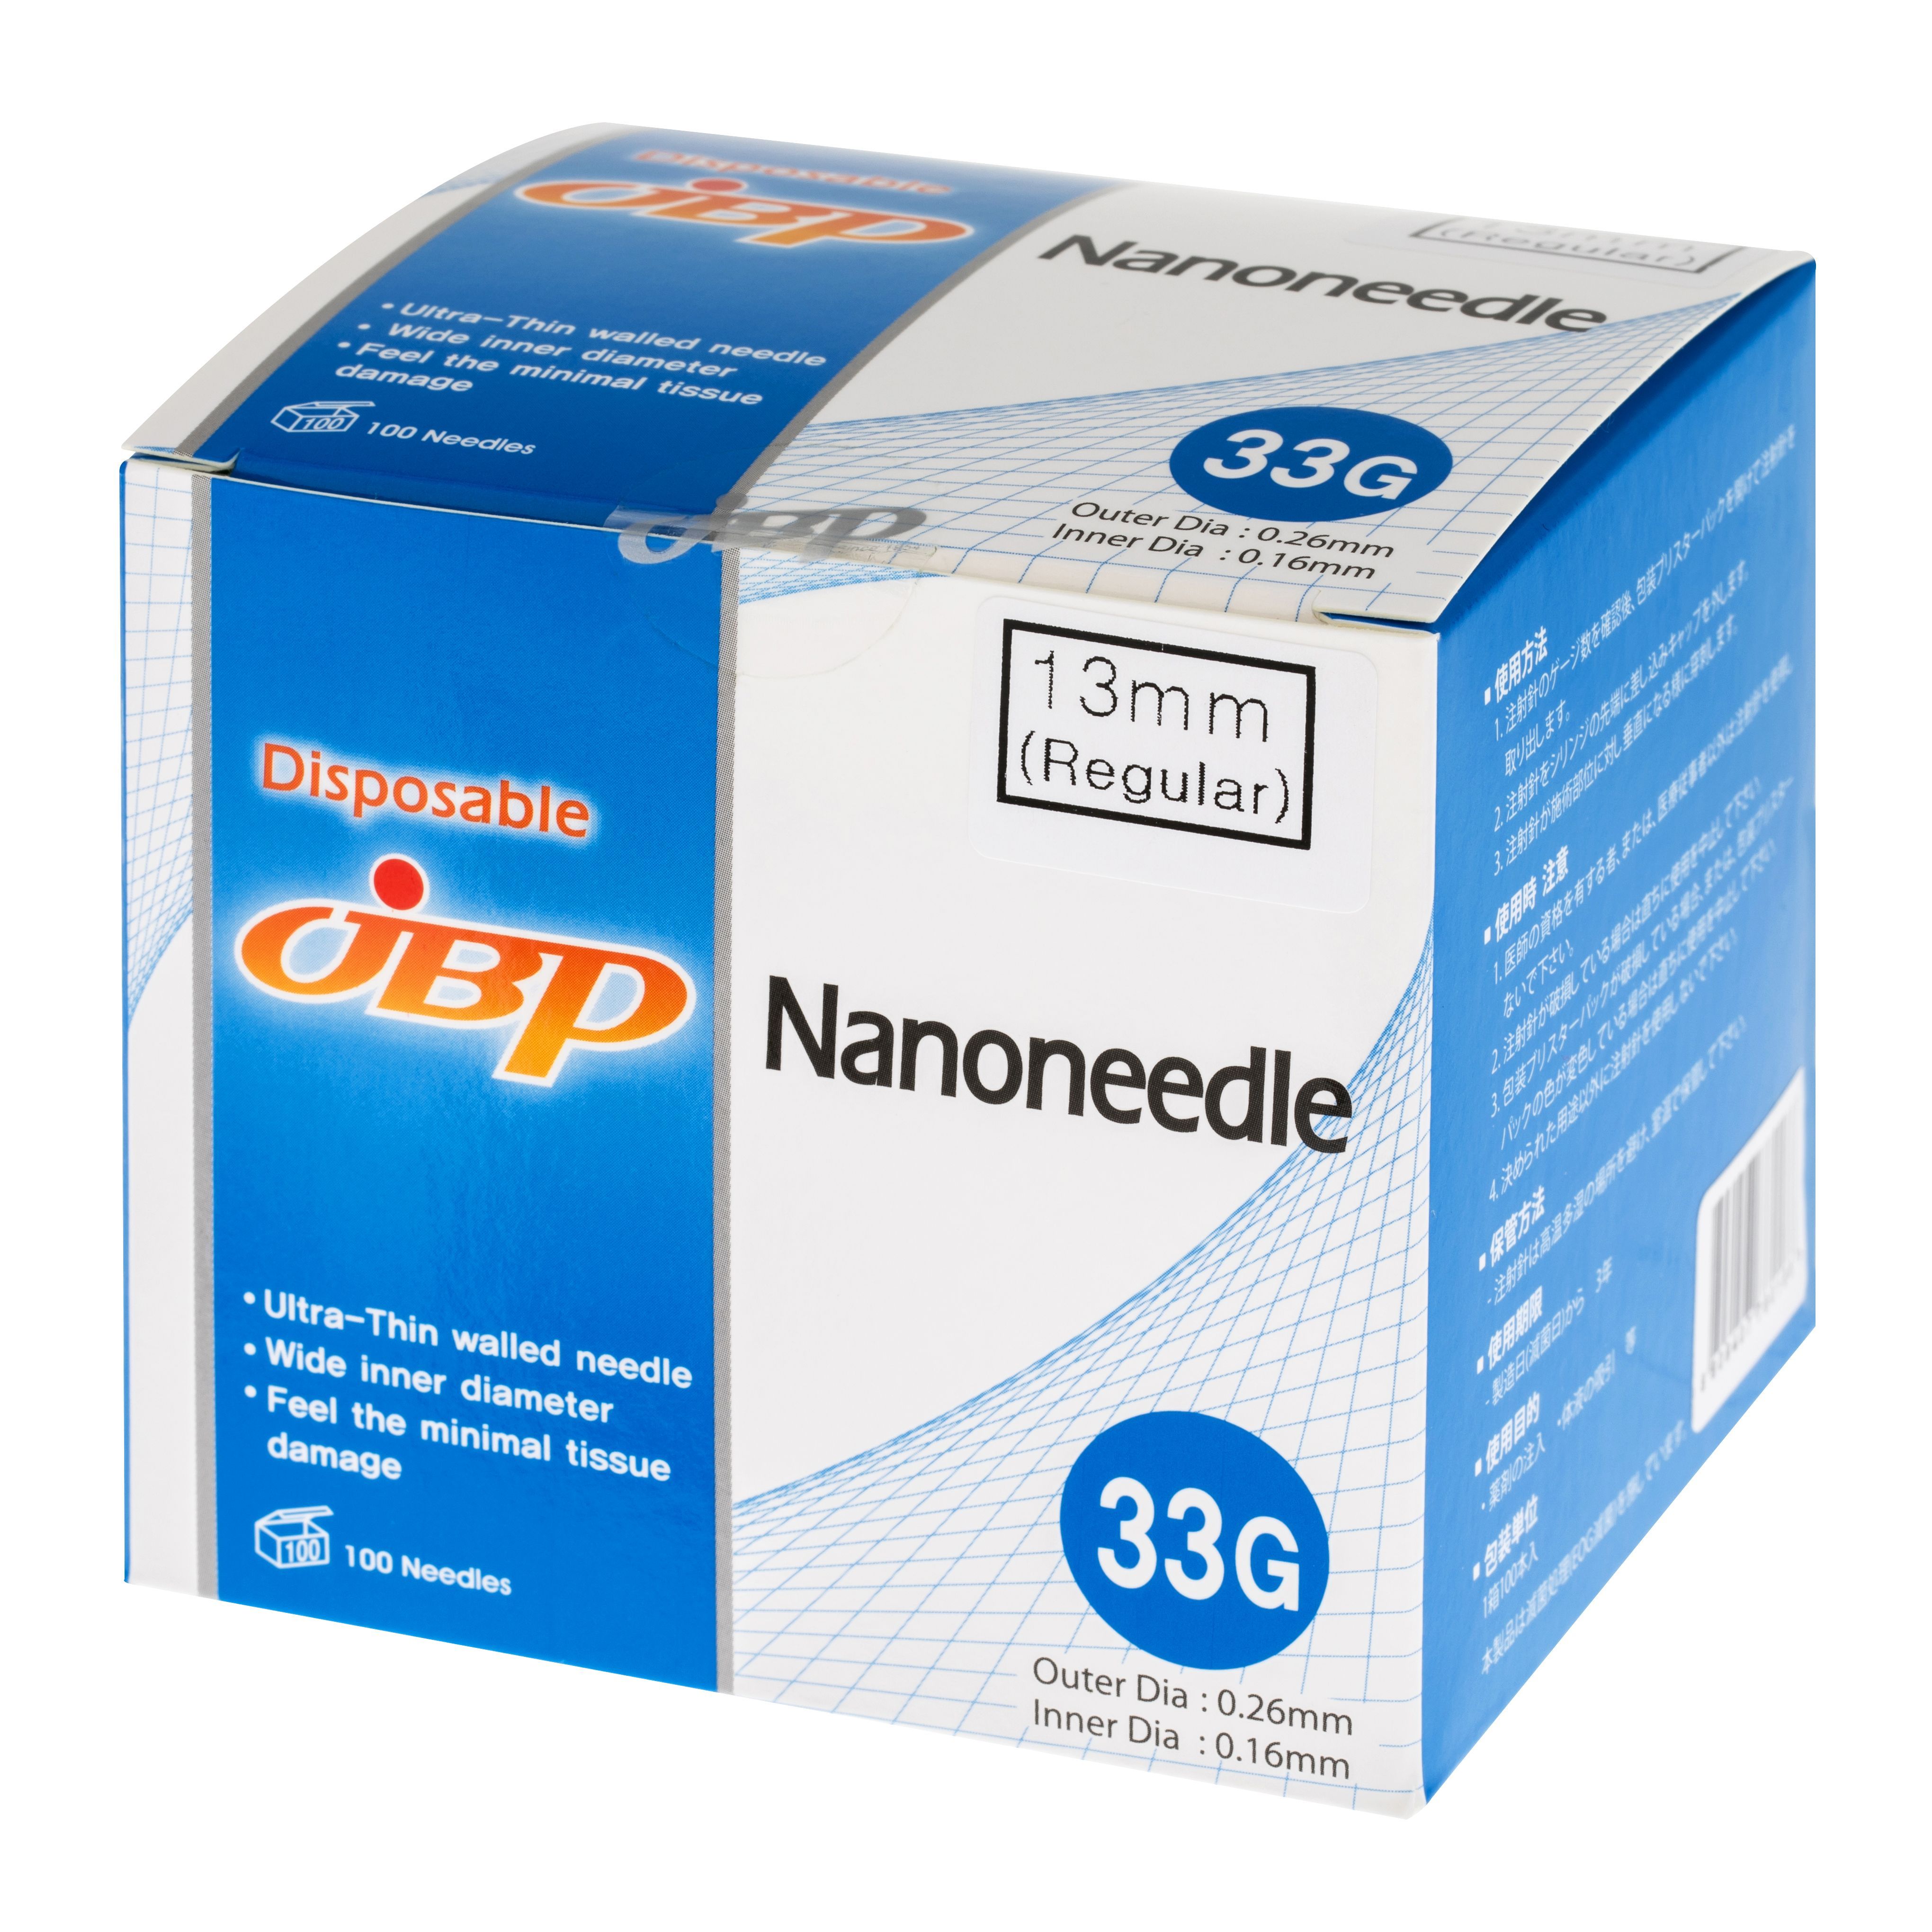 Нано иглы. Nanoneedle JBP 33g/4. Наноигла 33g / JBP Nanoneedle 33g (4 мм) 1 шт. Иглы для инъекций Nanoneedle 34g 4. Иглы (Nano Needle, dispossable Needle).